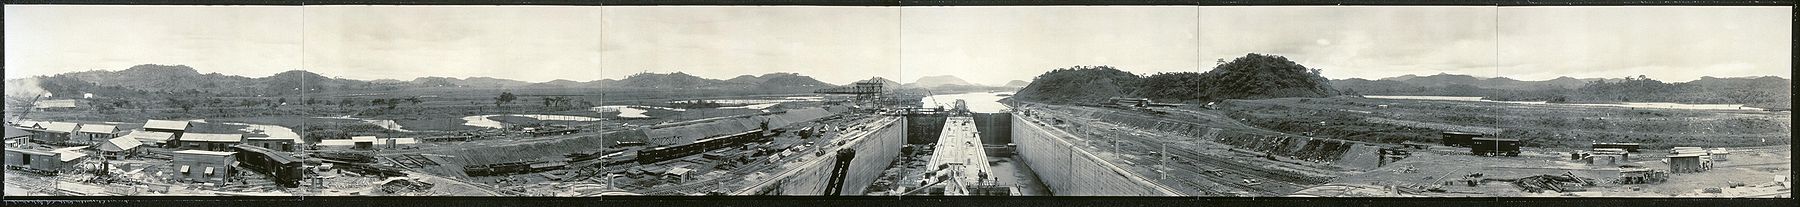 Vista panorámica de las Esclusas de Miraflores a punto de ser terminadas en 1914.